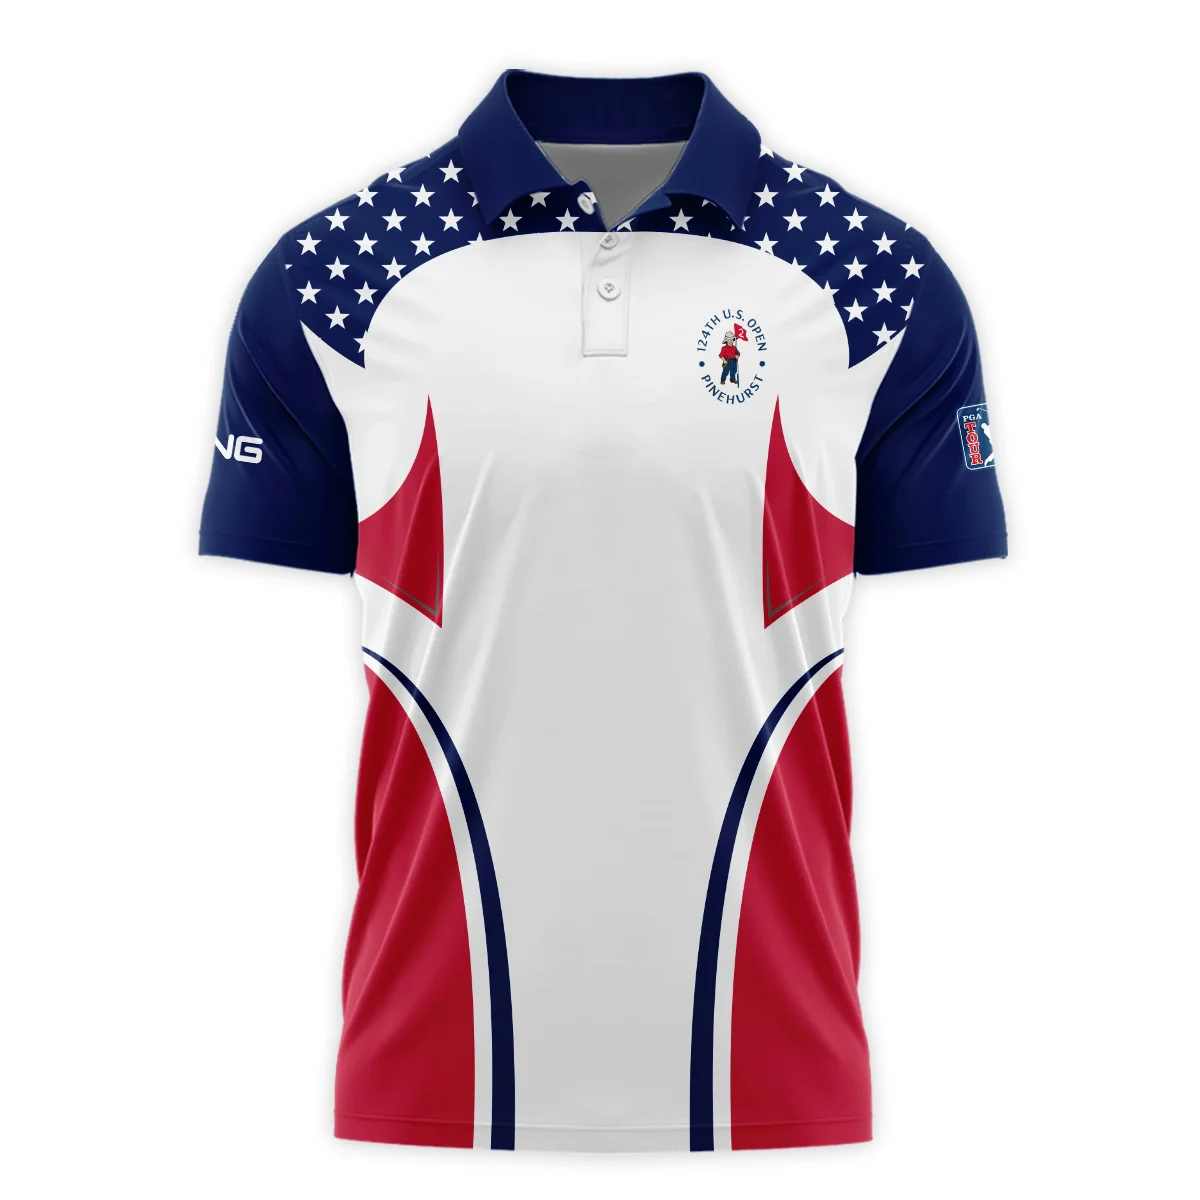 124th U.S. Open Pinehurst Ping Stars White Dark Blue Red Line Zipper Hoodie Shirt Style Classic Zipper Hoodie Shirt